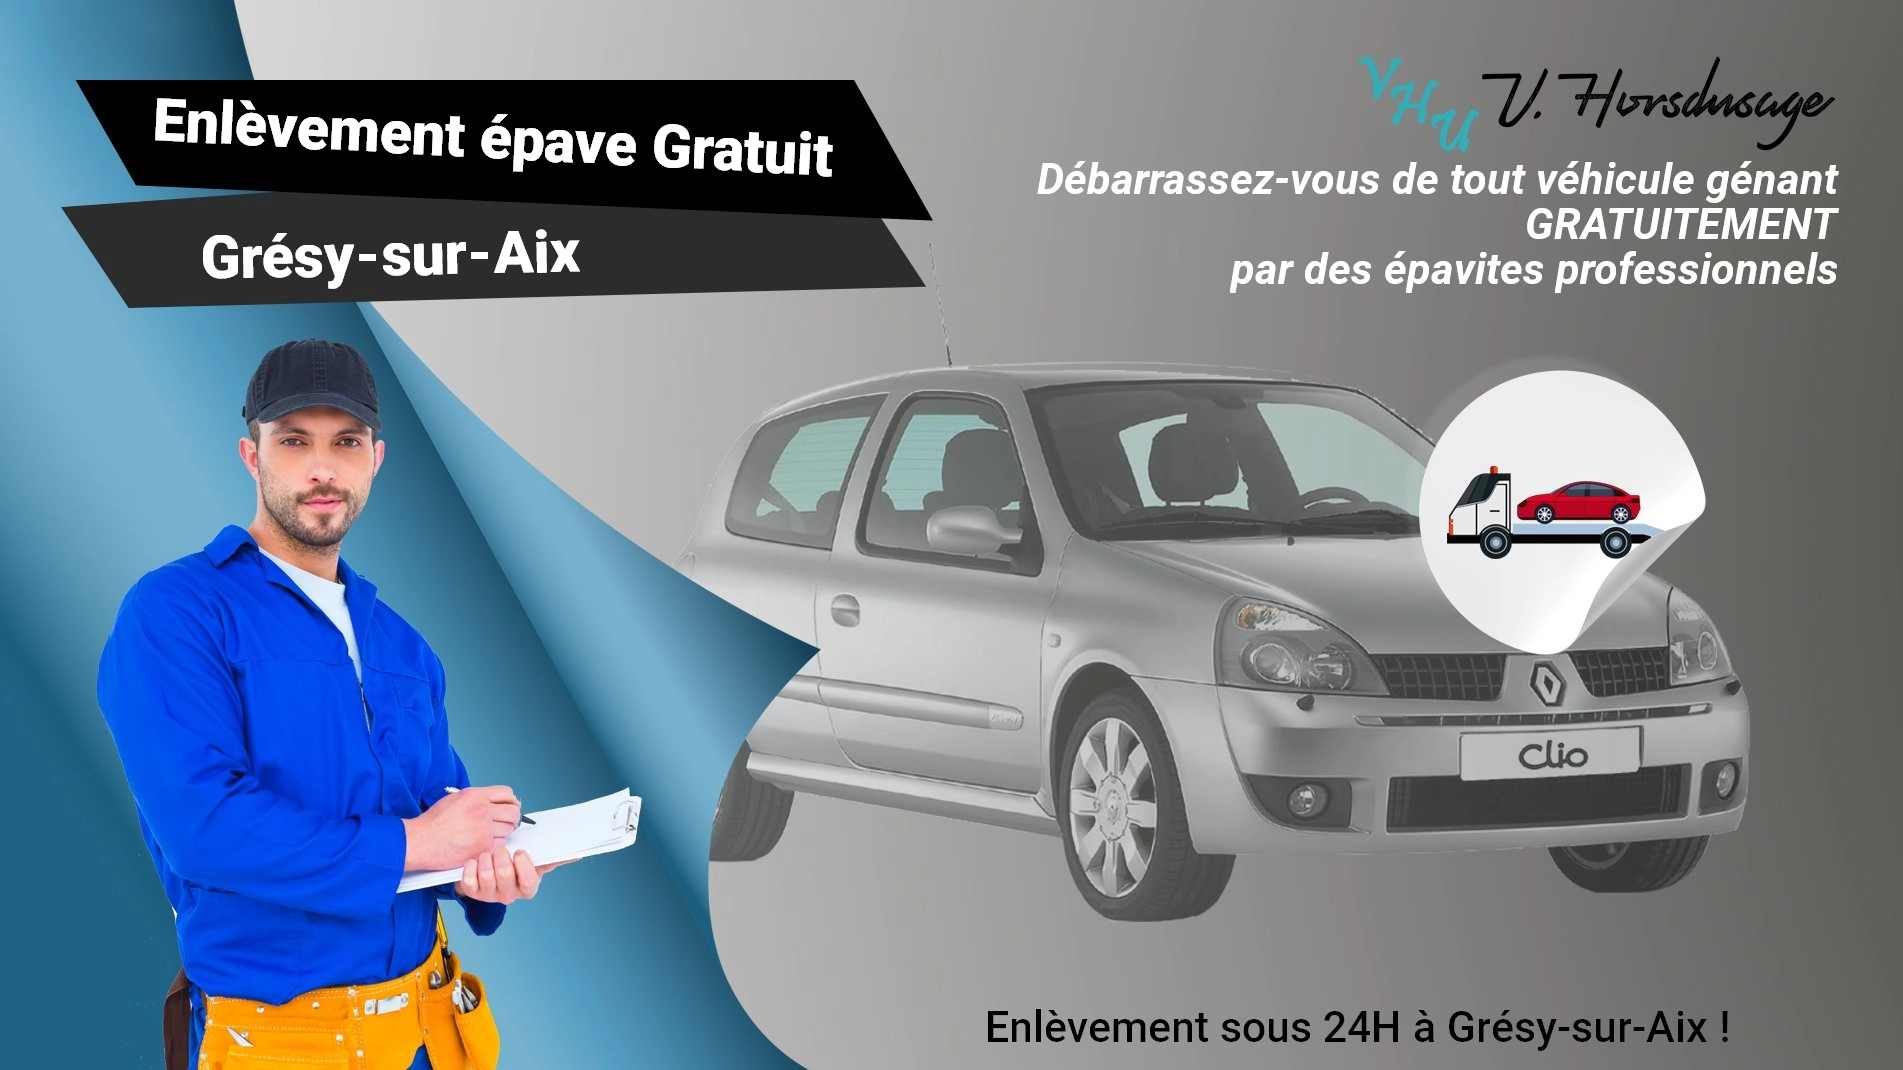 Pour un enlèvement gratuit à Grésy-sur-Aix, contactez nos épavistes agréé VHU